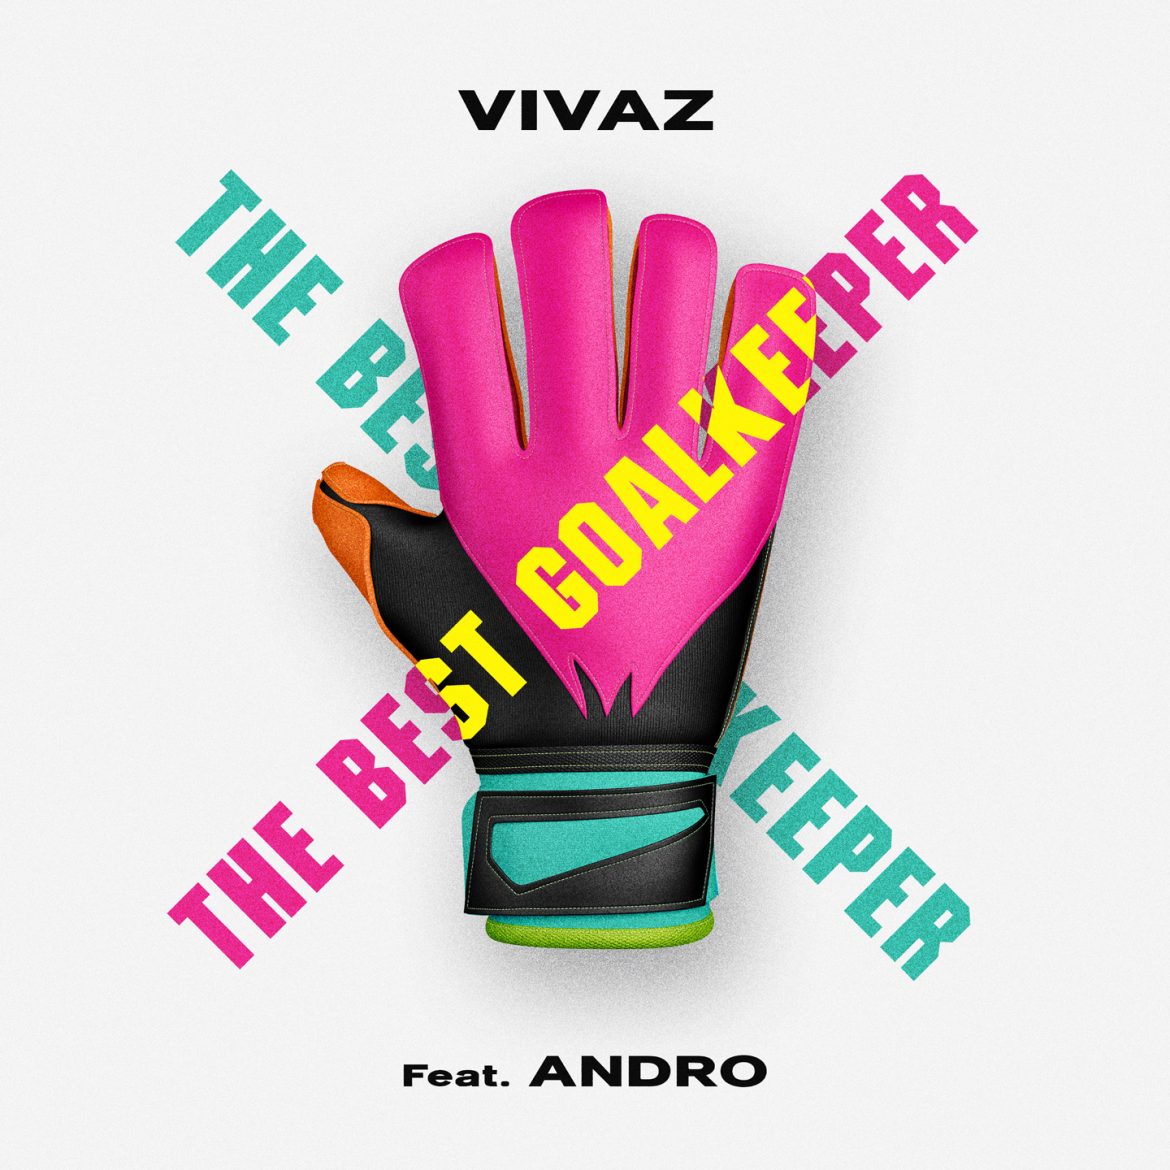 “The Best Goalkeeper” è il nuovo singolo di VIVAZ e Andro, la prima canzone interamente dedicata ai migliori portieri della storia del calcio.